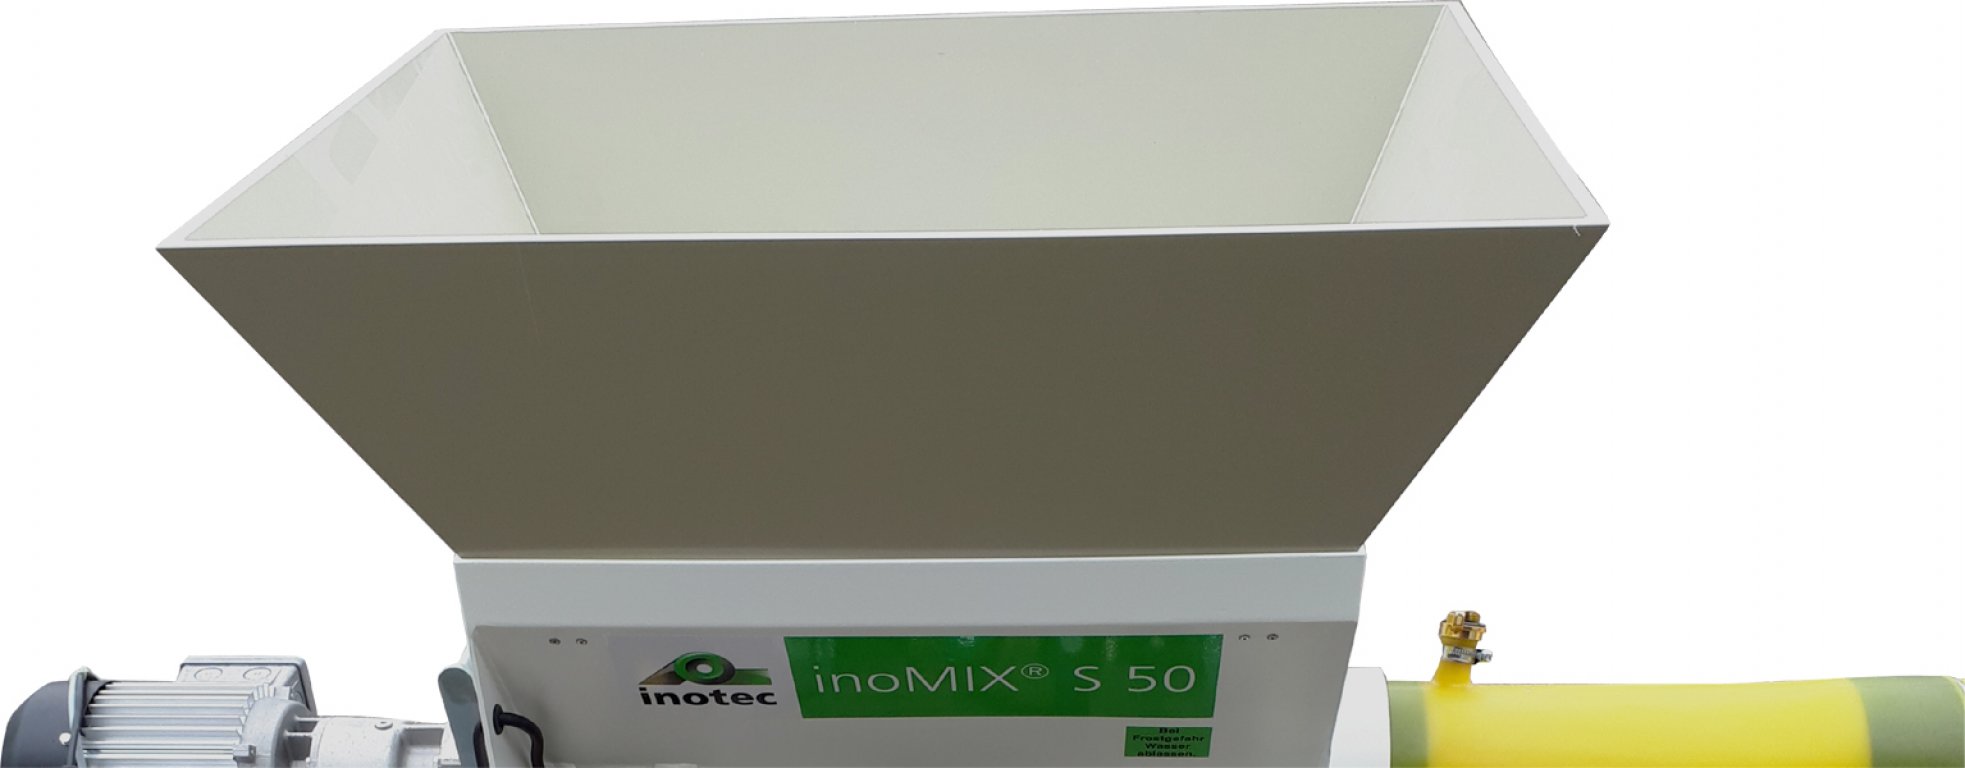 Plastic funnel attachment for inoMIX S50 / S50 T / S50 S 